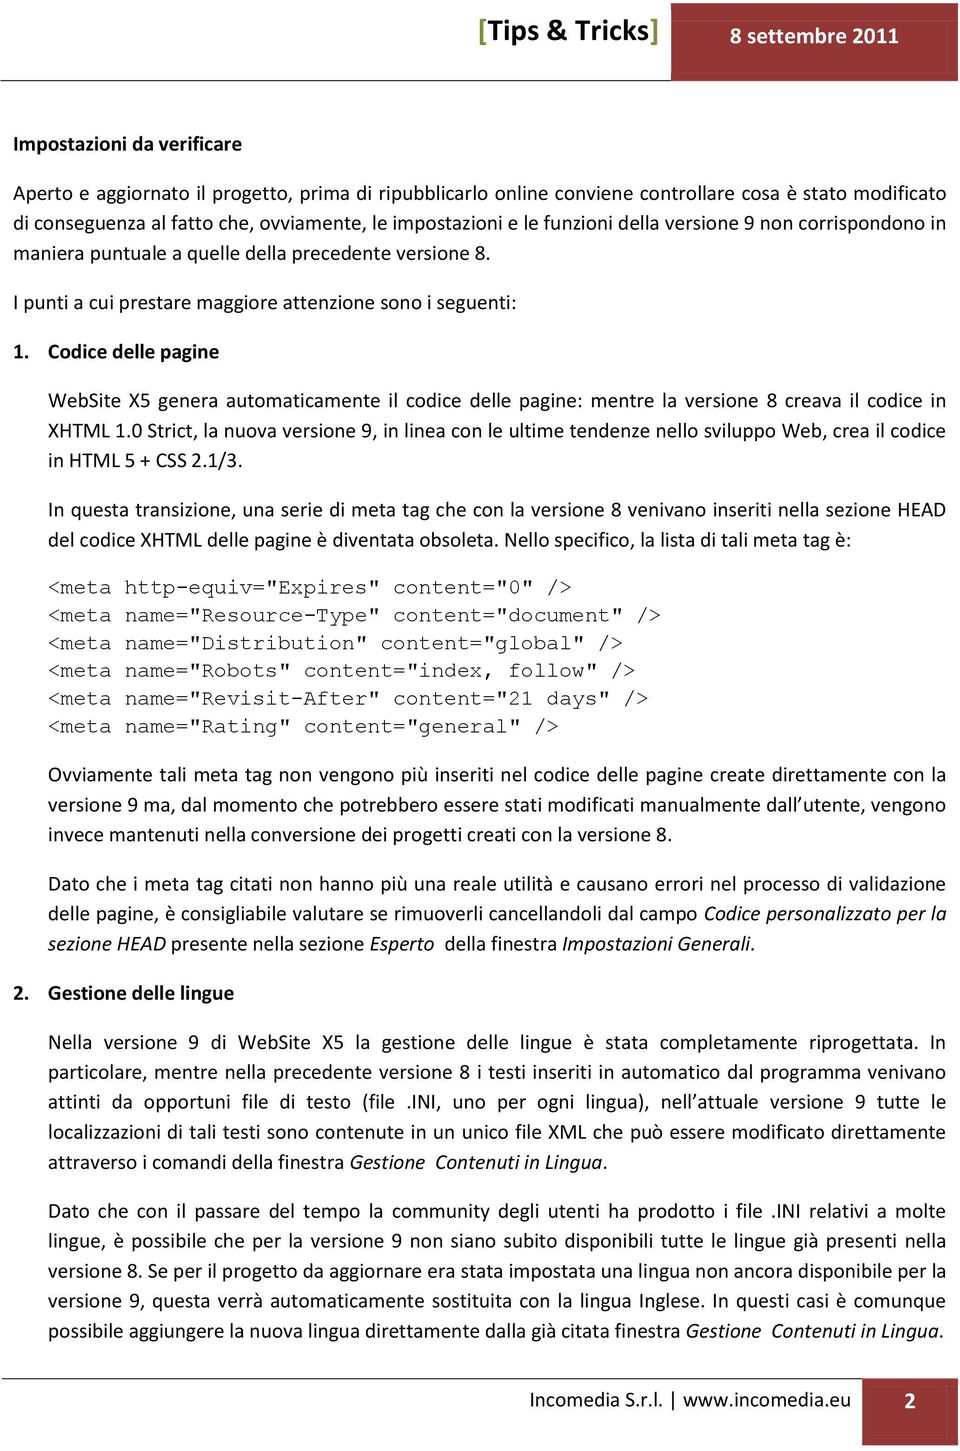 Codice delle pagine WebSite X5 genera automaticamente il codice delle pagine: mentre la versione 8 creava il codice in XHTML 1.